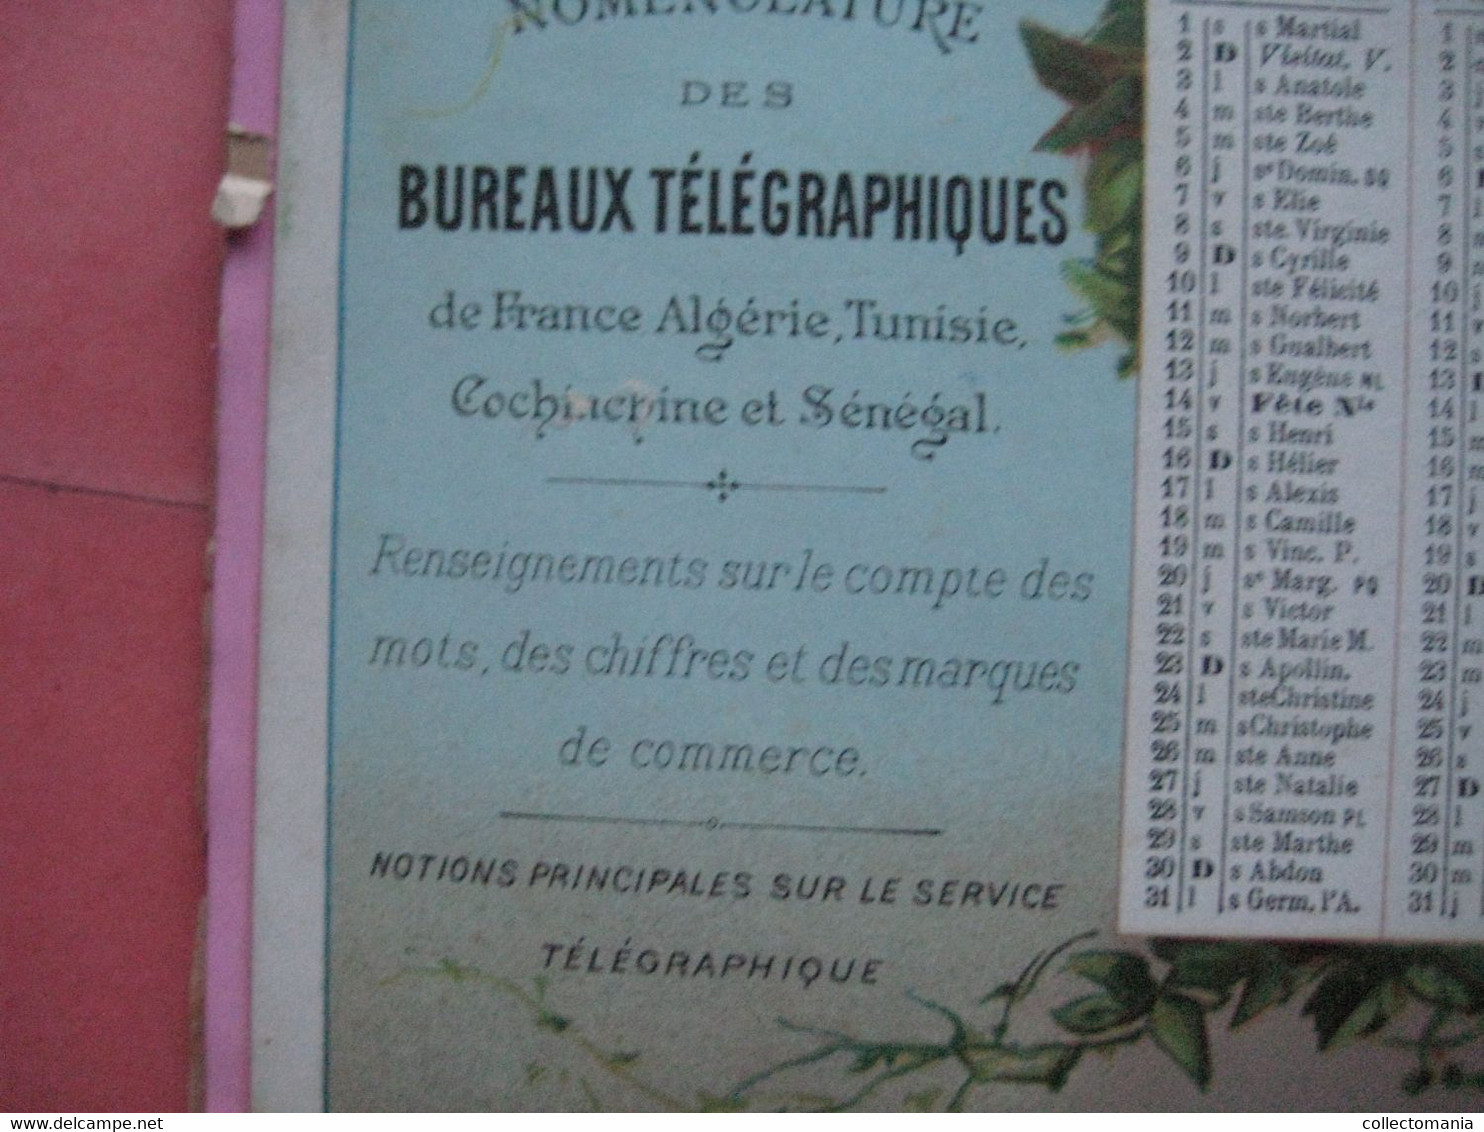 Calendrier Almenach c1893 Indicateurs et Nomenclature Télégraphiques & TELEPHONE de France et colonies 21cmX14cm